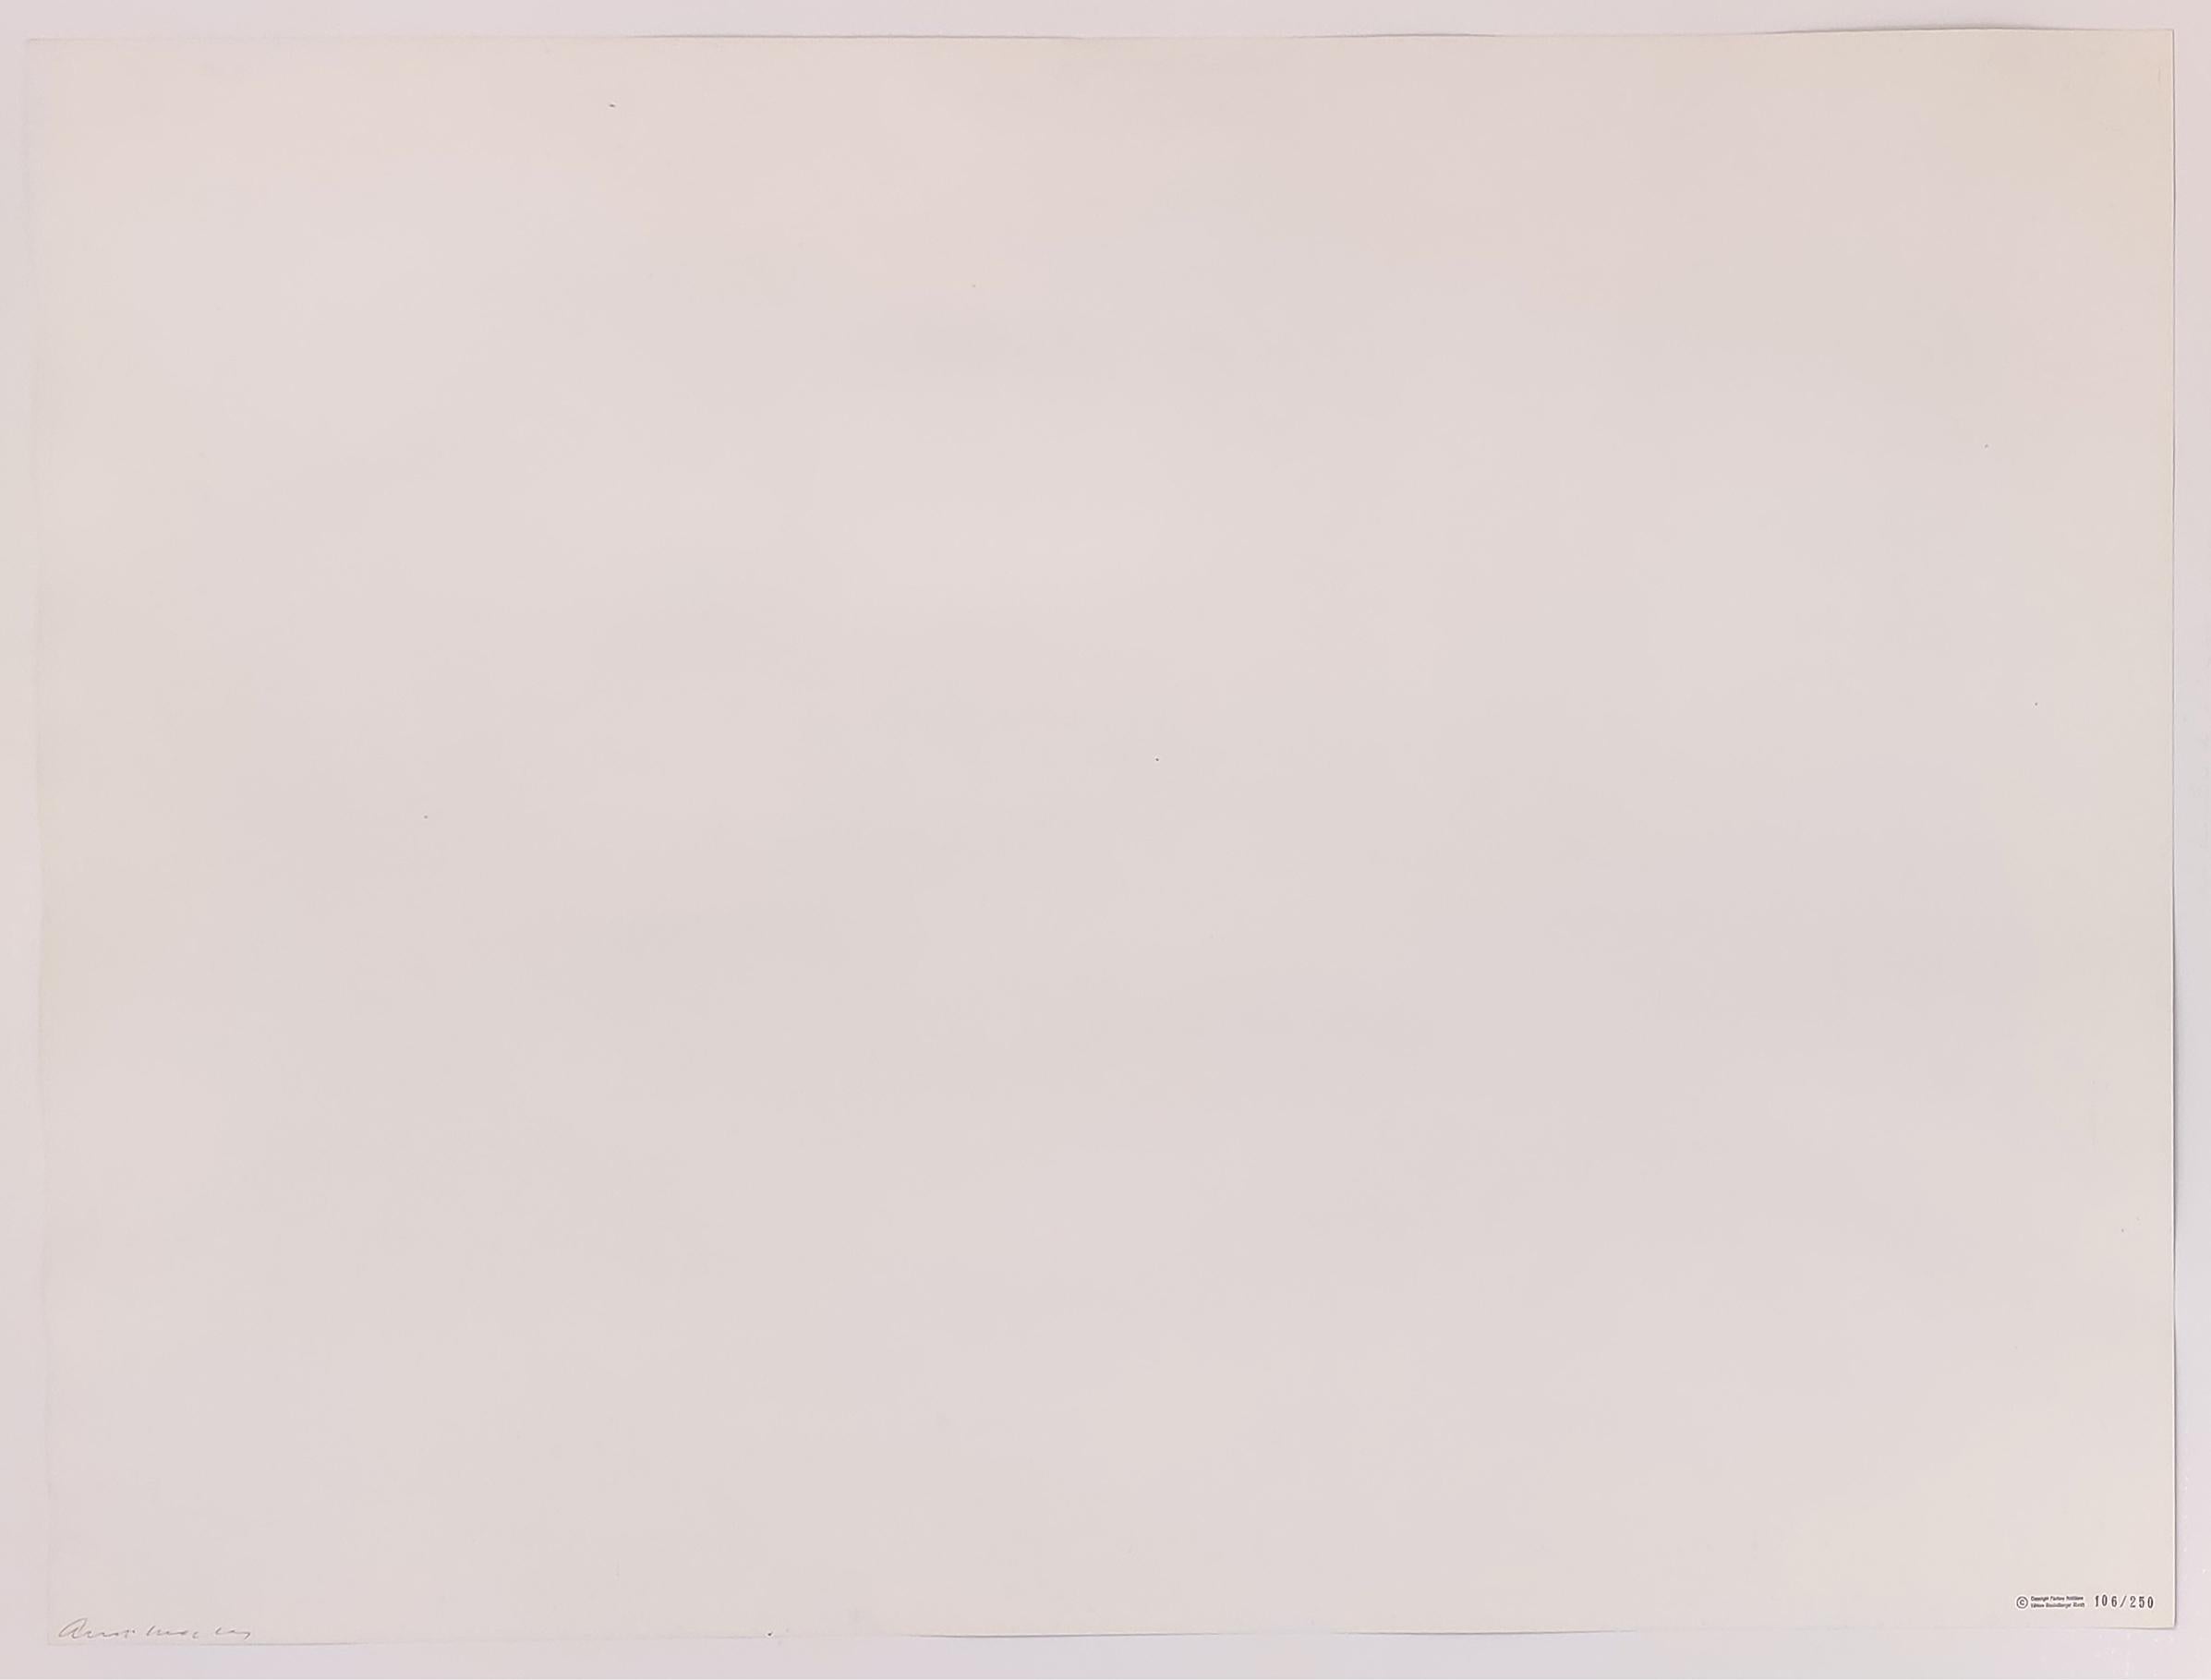 ELEKTRISCHER STUHL FS II.79 – Print von Andy Warhol